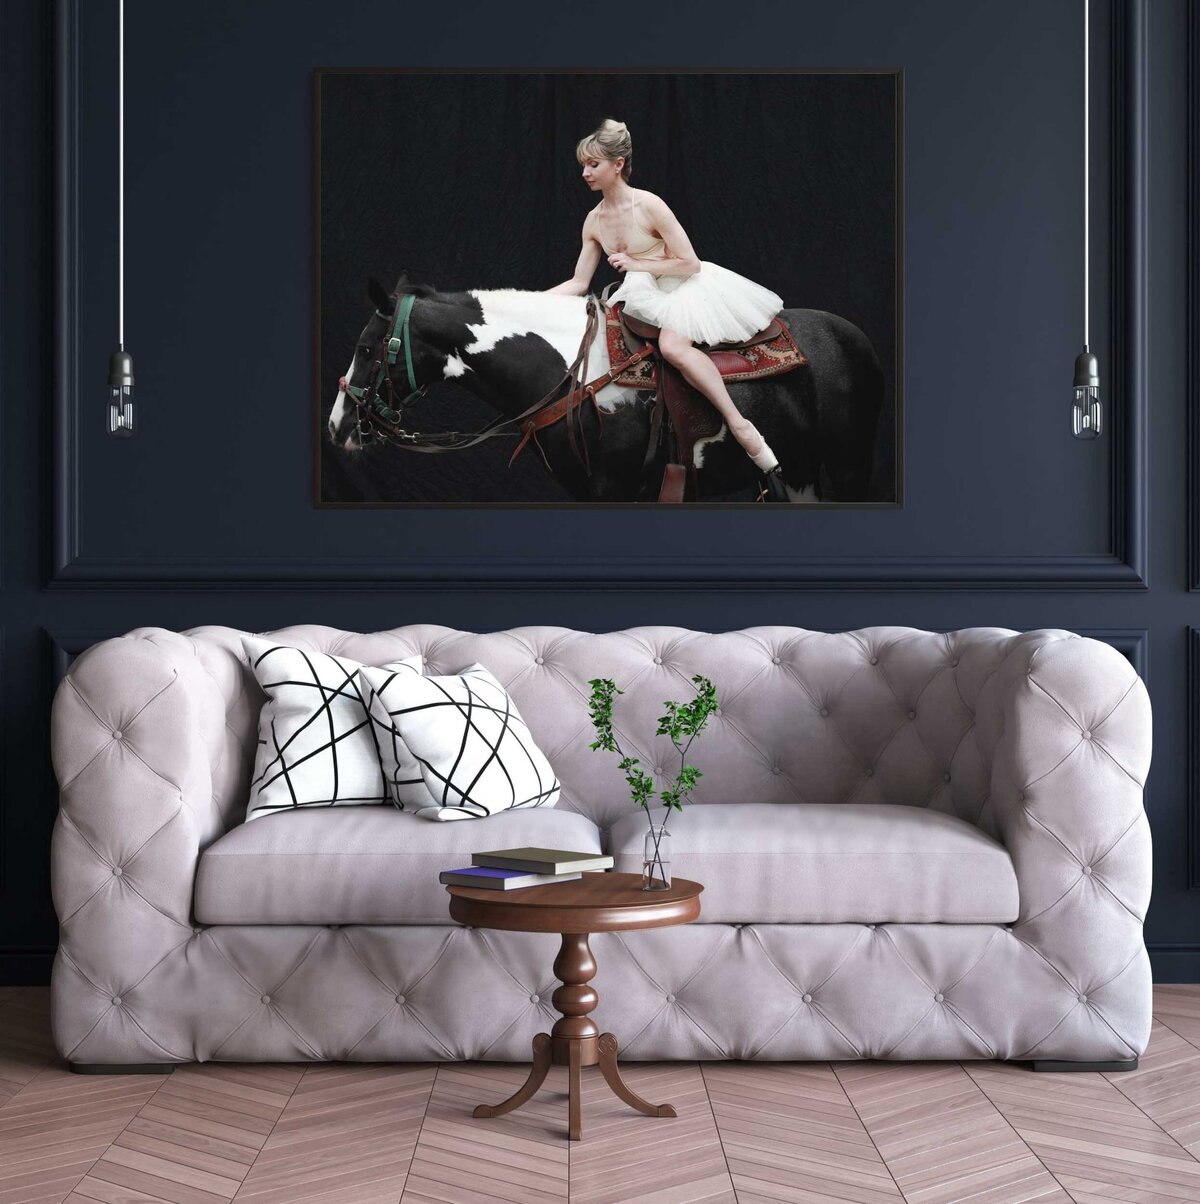 Framed wall art - ballerina sitting on horse-22